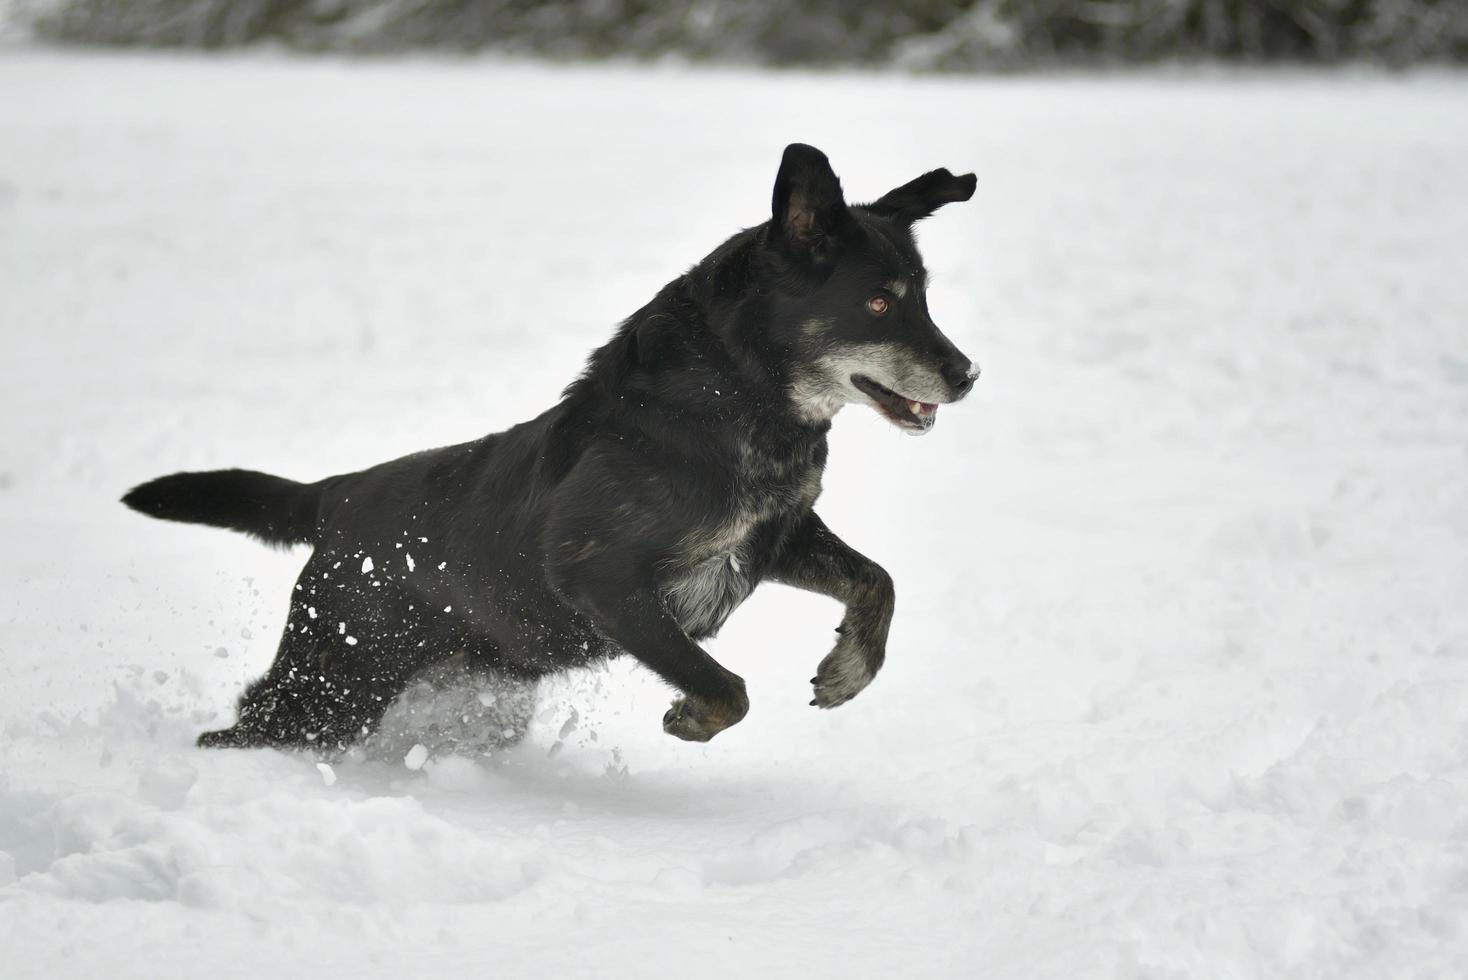 zwarte gelukkige hond die in de sneeuw loopt foto